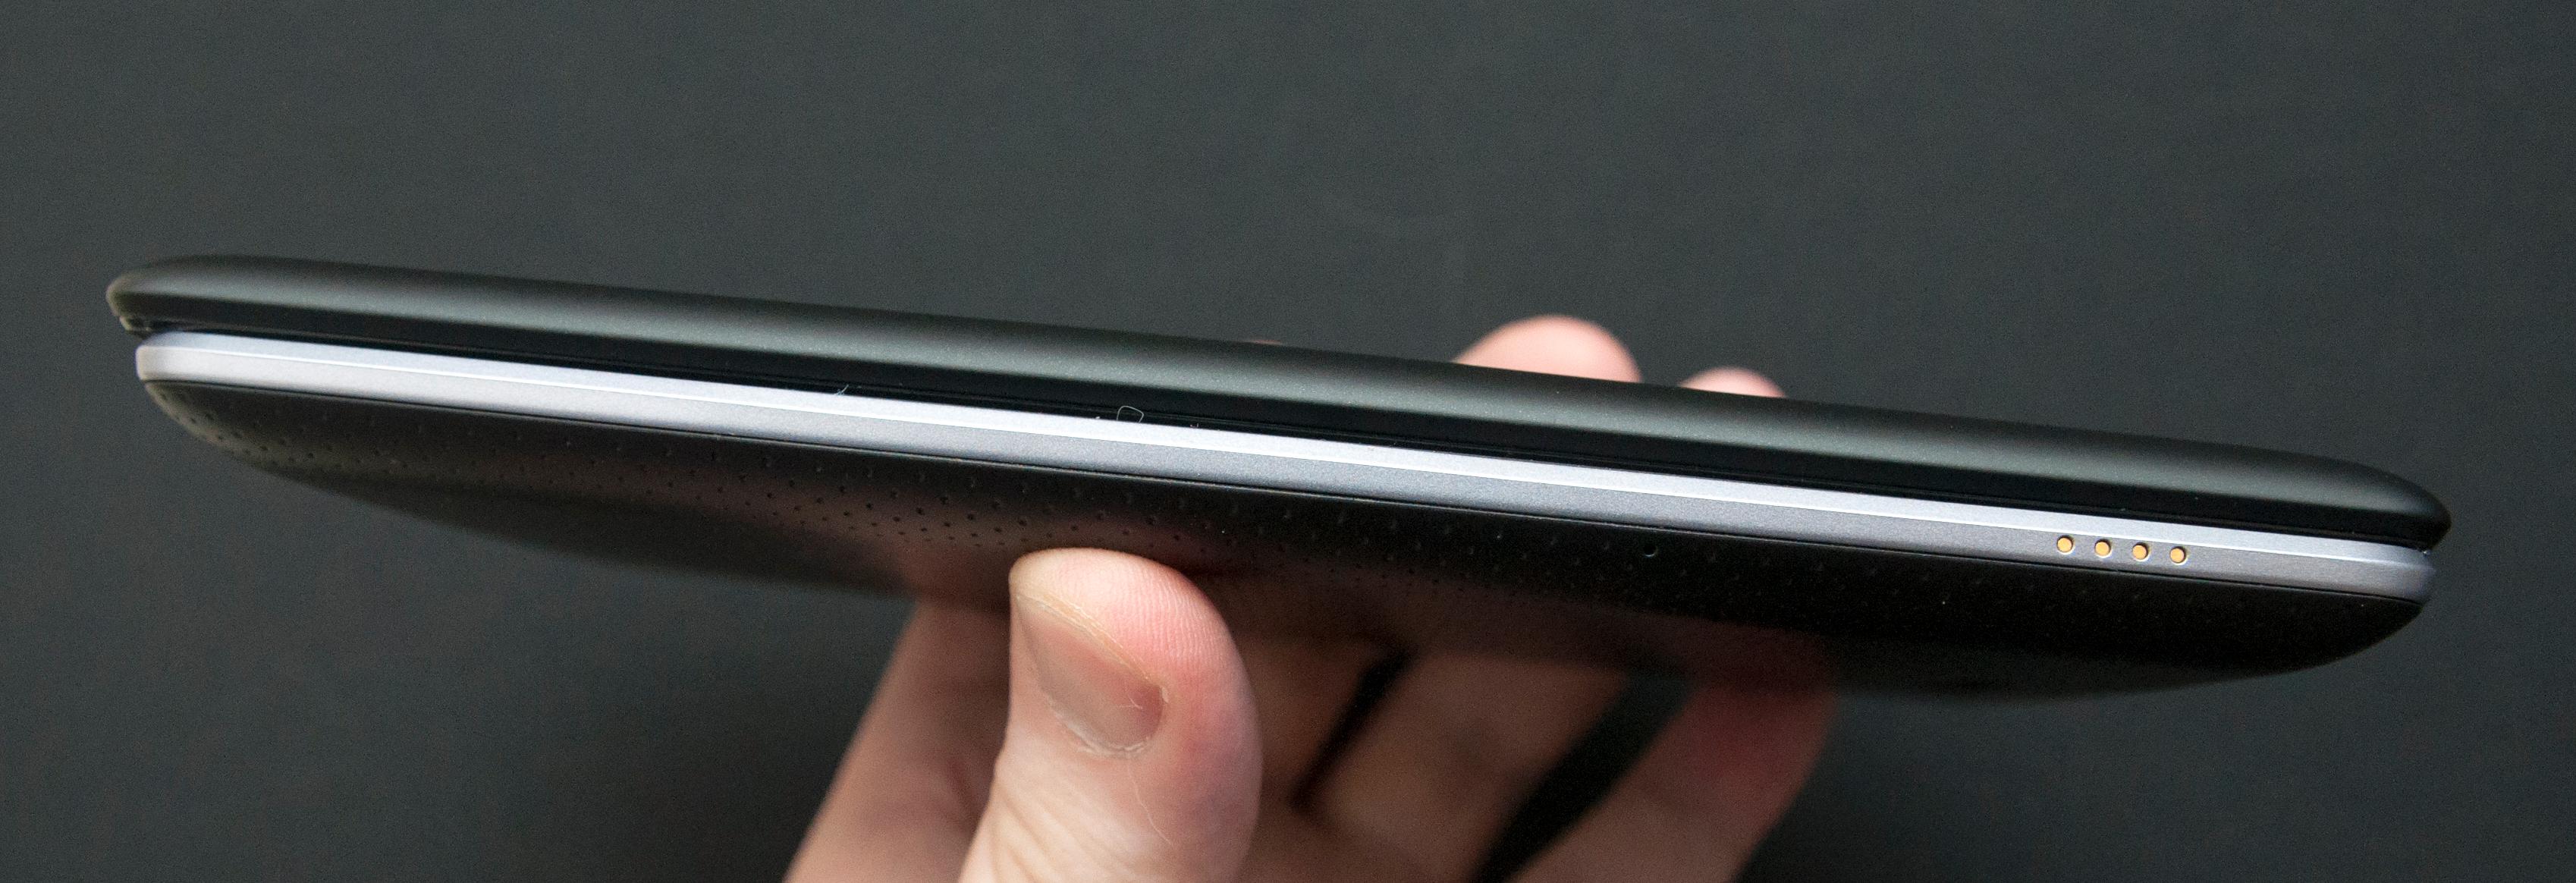 Ny og gammel Nexus 7 - den nye er øverst.Foto: Finn Jarle Kvalheim, Amobil.no